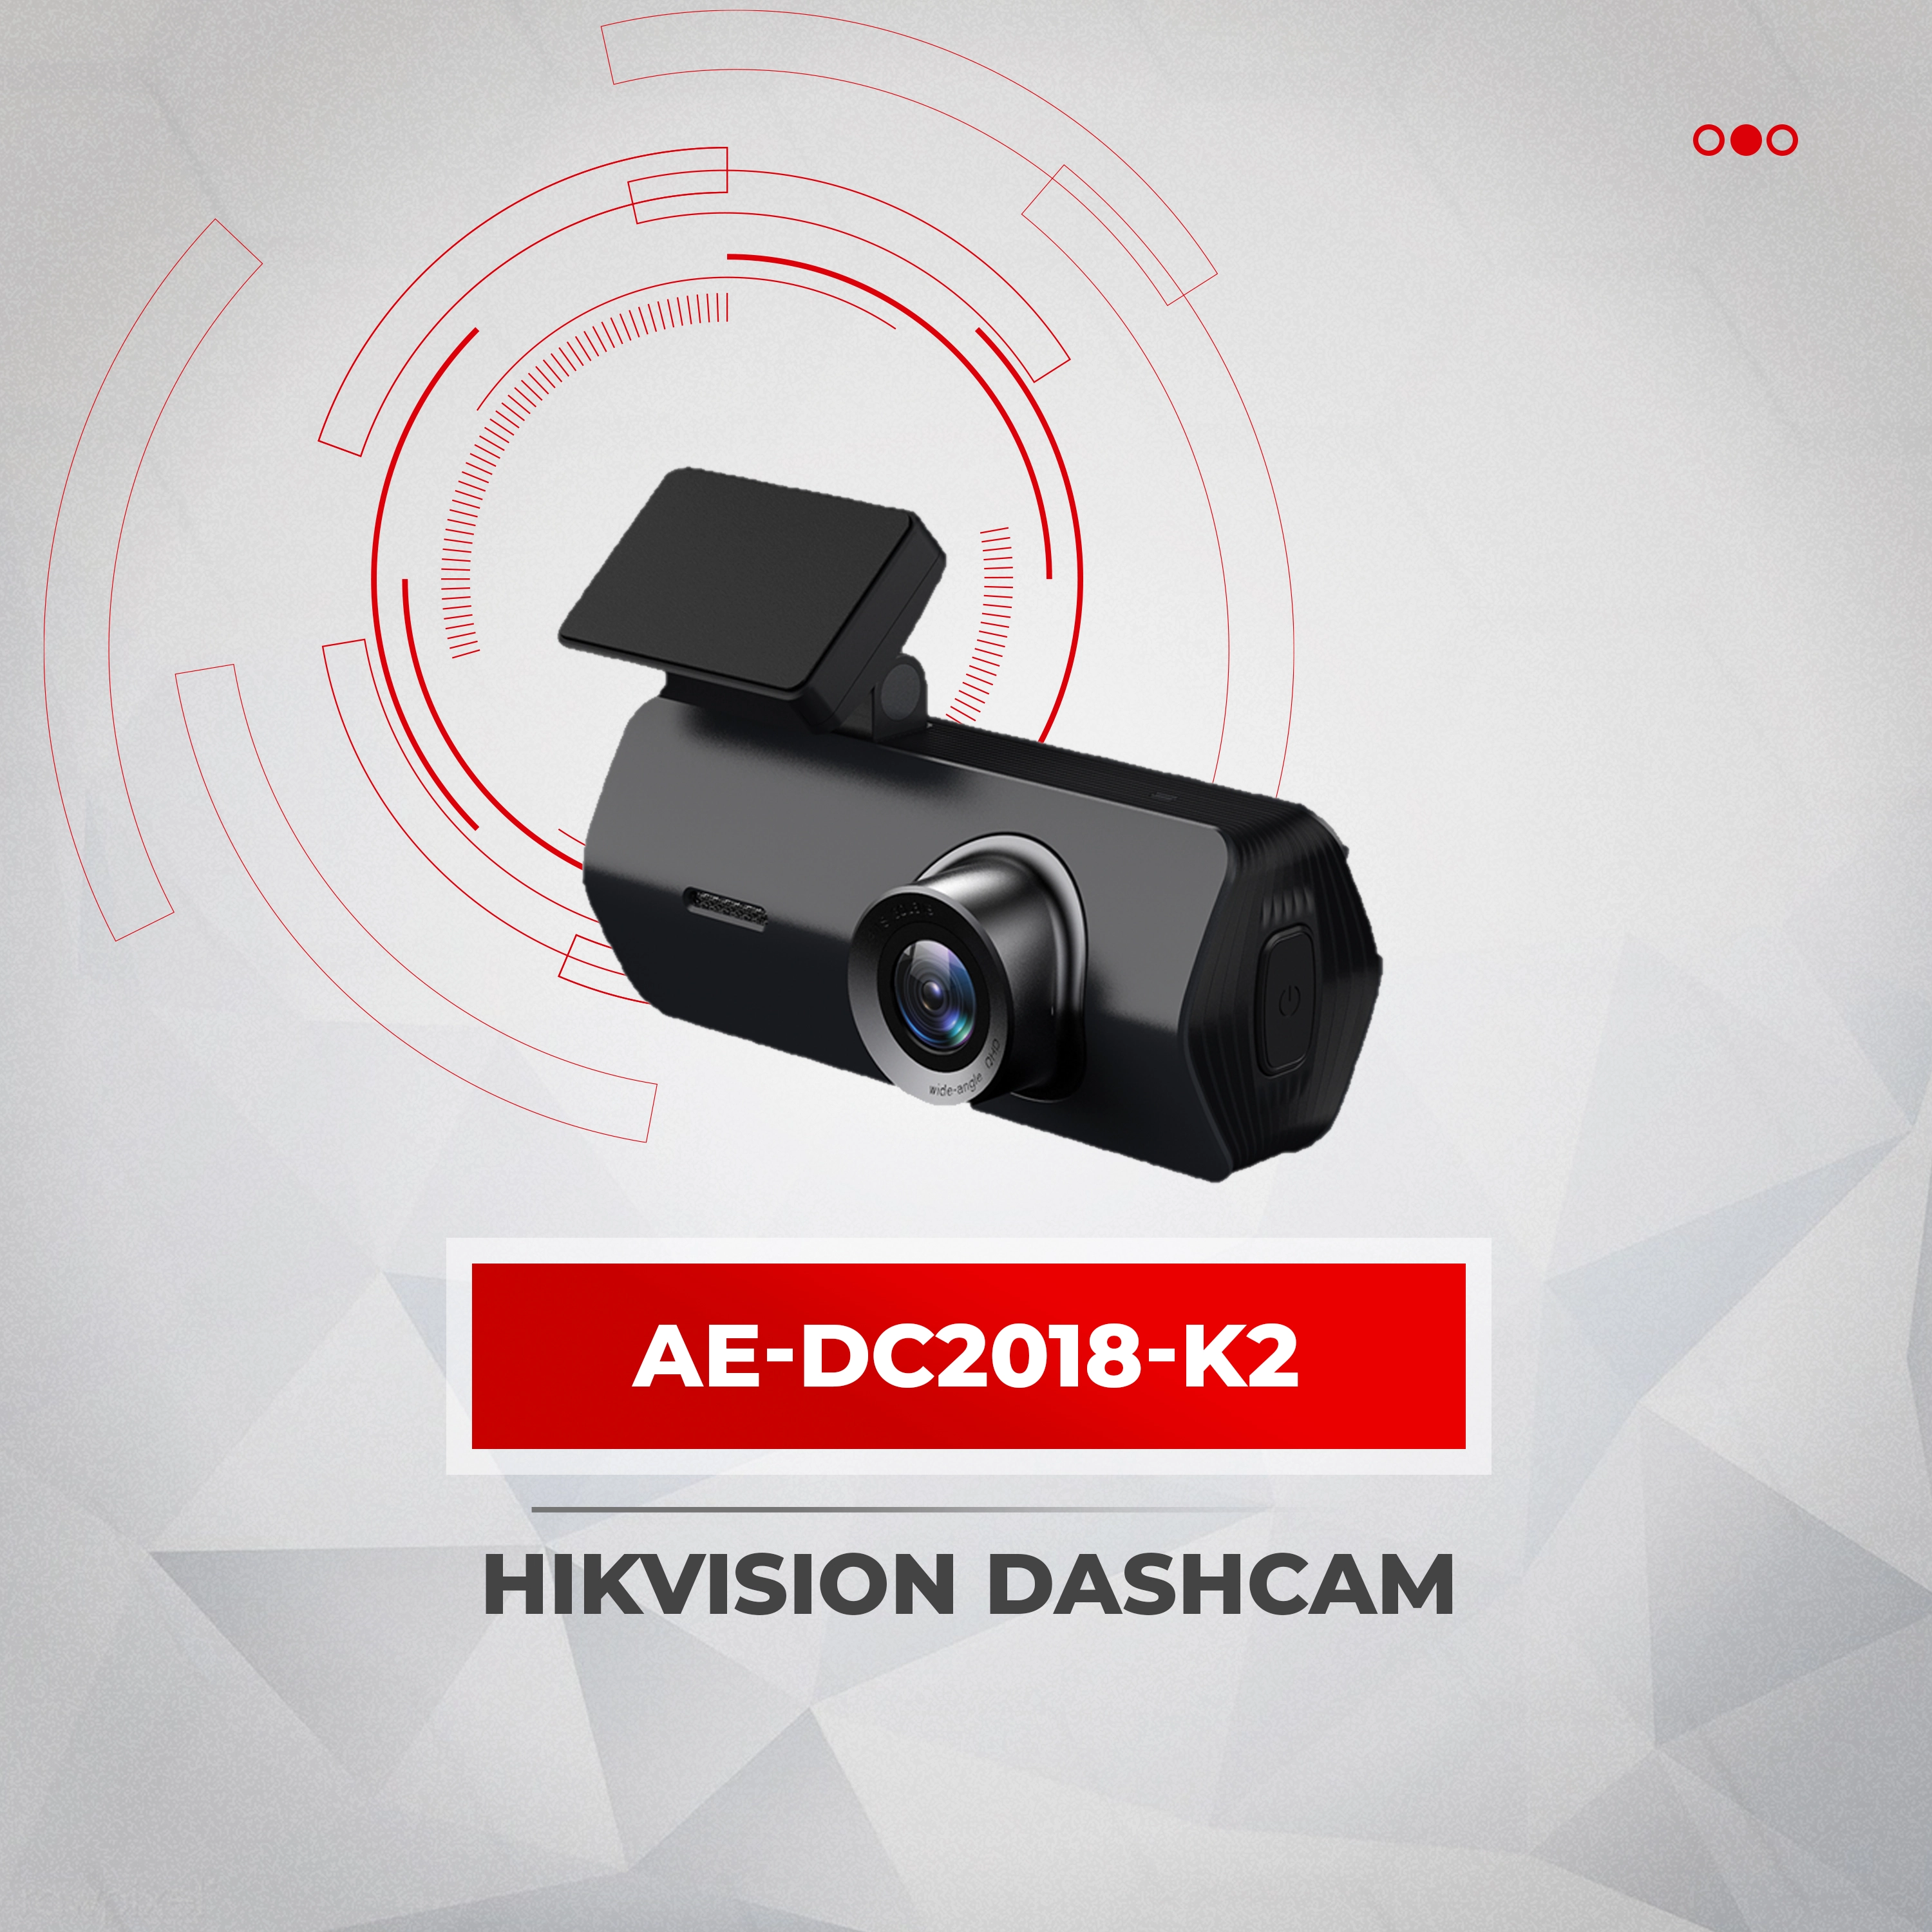 Hikvision dashcam